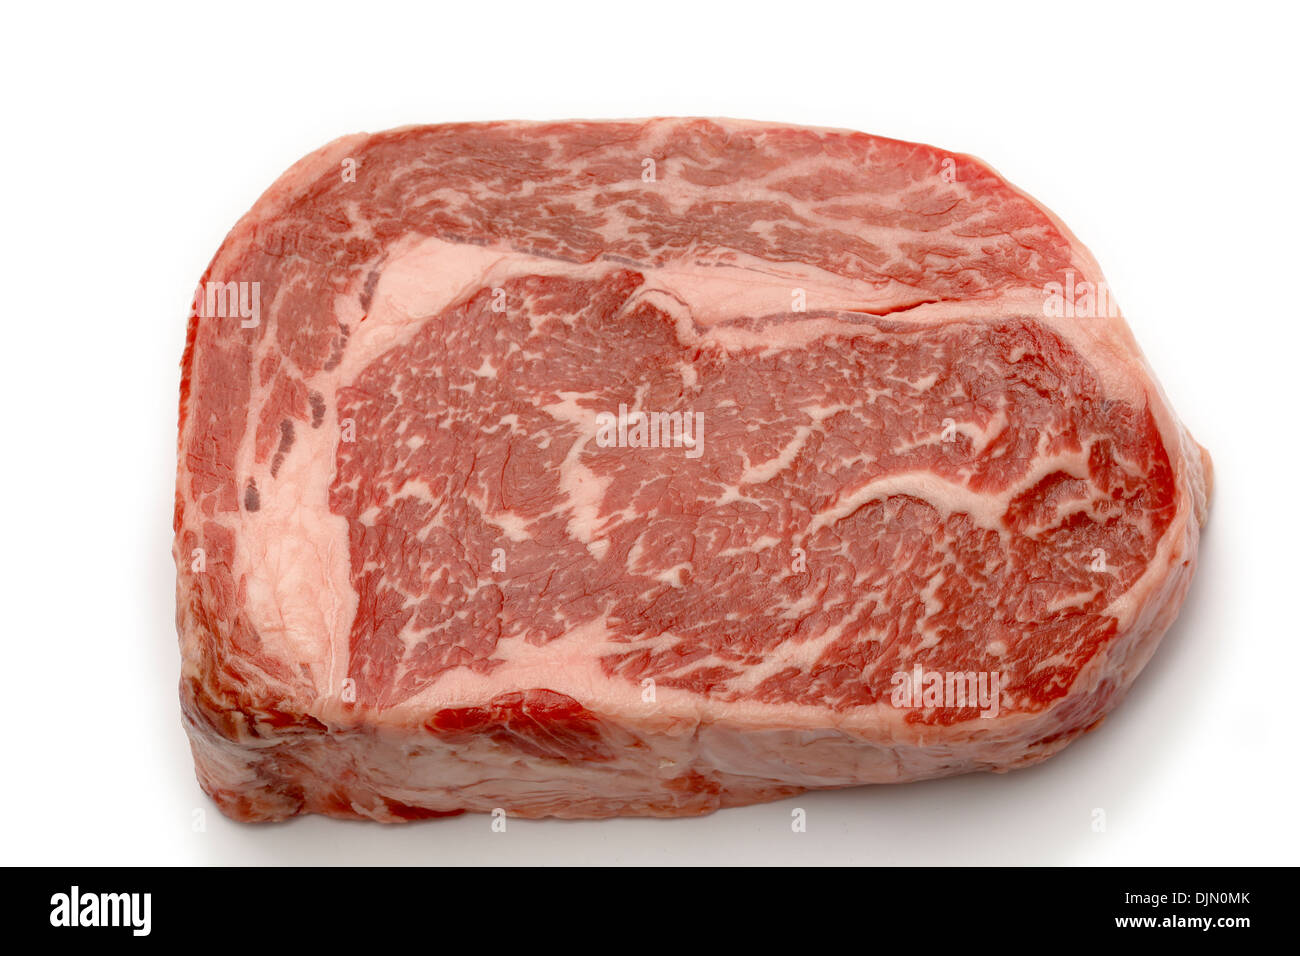 Ribeye-Steak vom australischen Wagyu-Rinder. Stockfoto